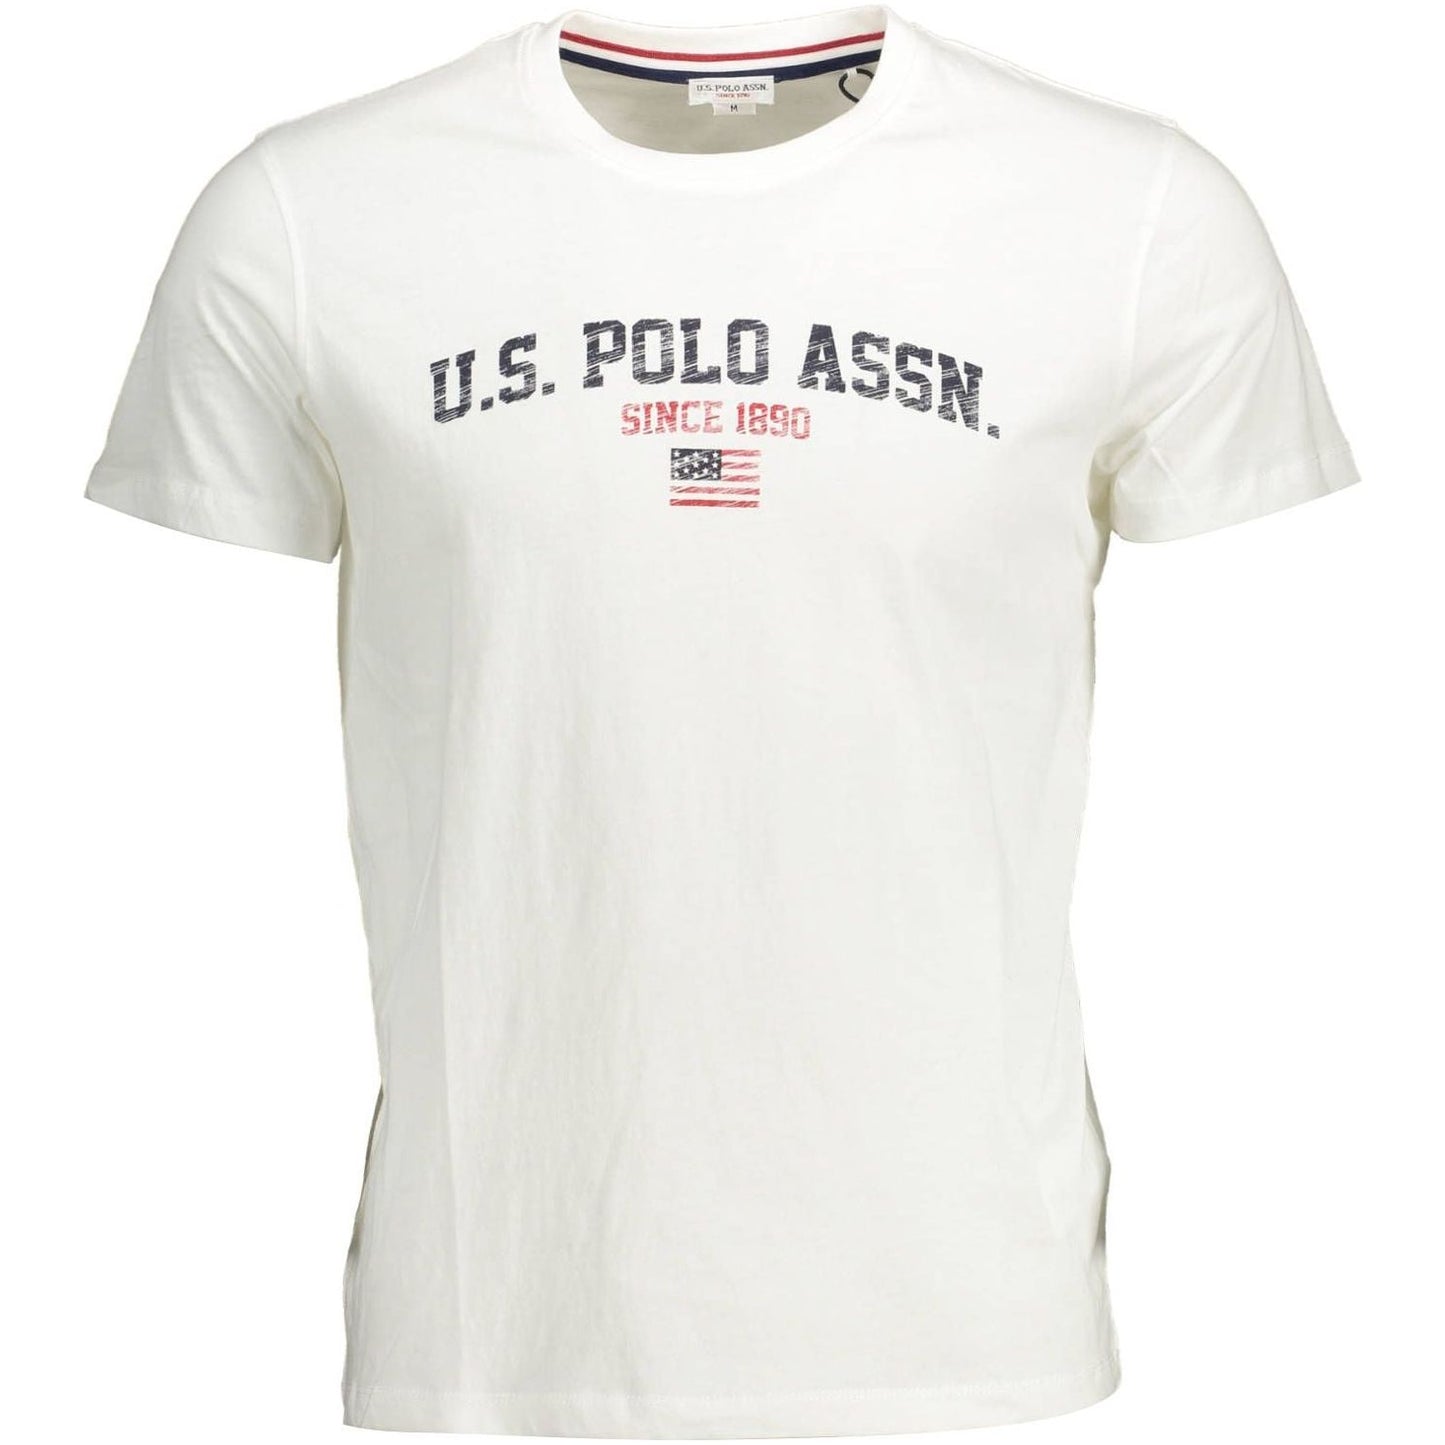 U.S. POLO ASSN. Crisp White Cotton Crew Neck Tee with Logo crisp-white-cotton-crew-neck-tee-with-logo